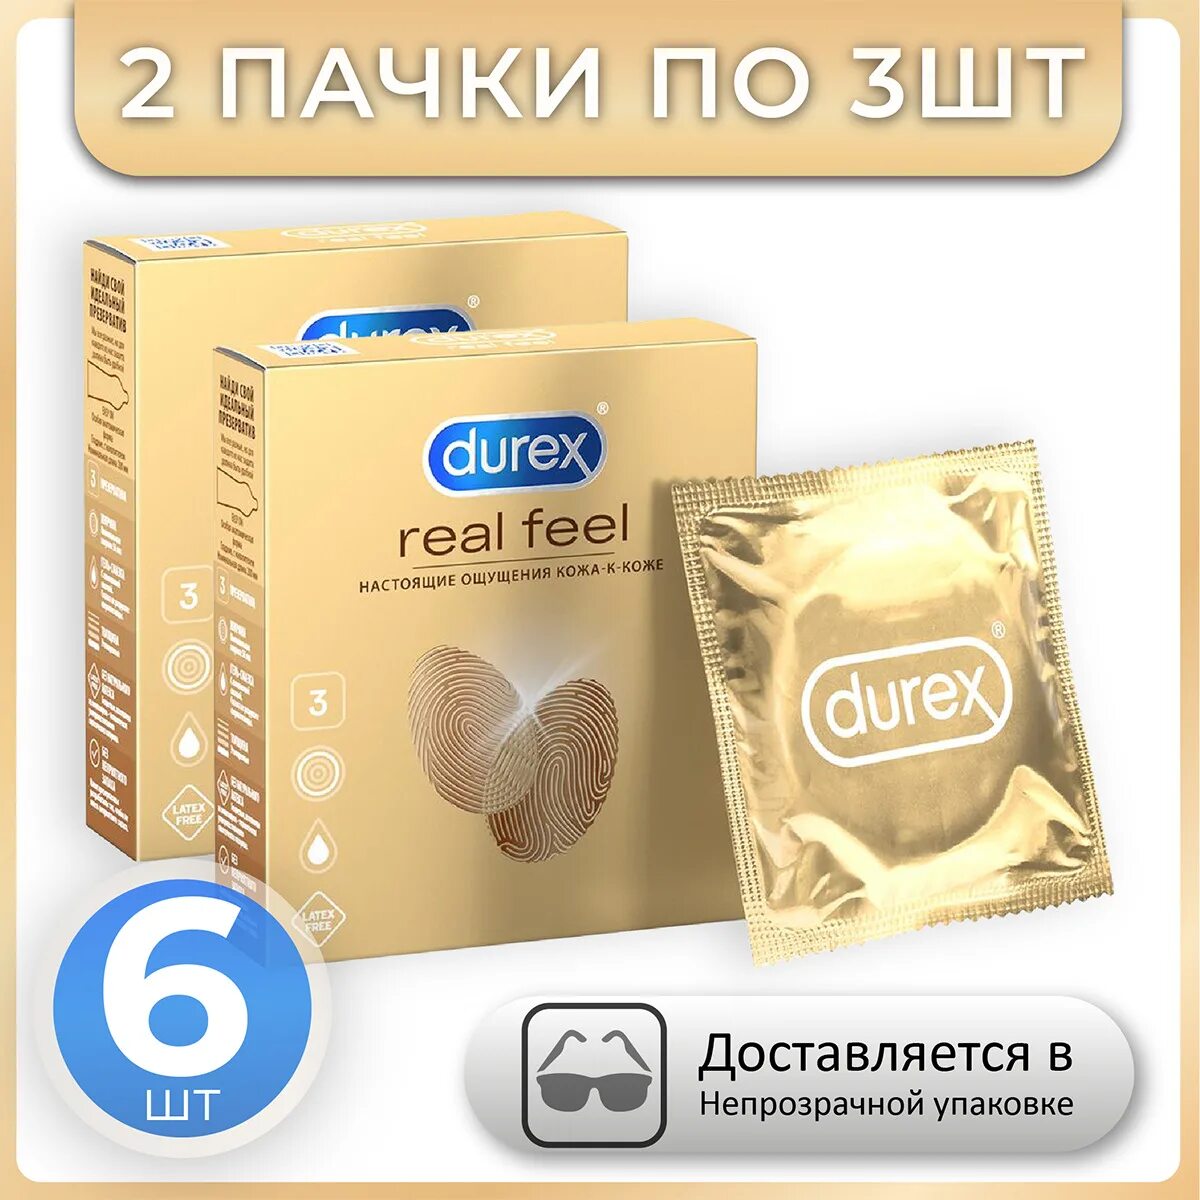 Durex real feel. Дюрекс Реал Фил. Real feel Durex упаковка. Durex real feel Размеры.